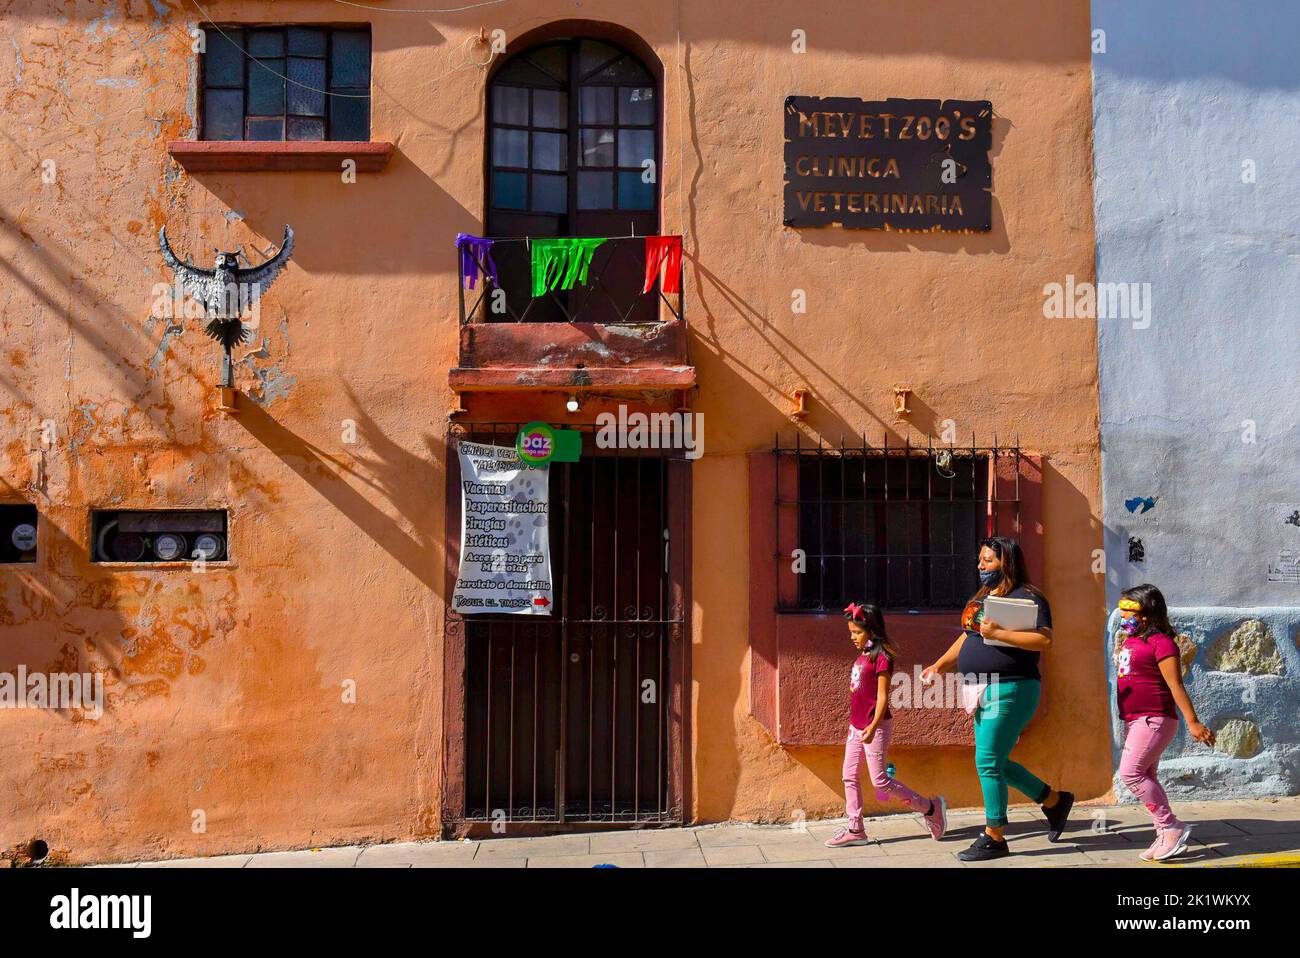 Gente caminando en el centro histórico de Oaxaca de Juárez, México Foto de stock